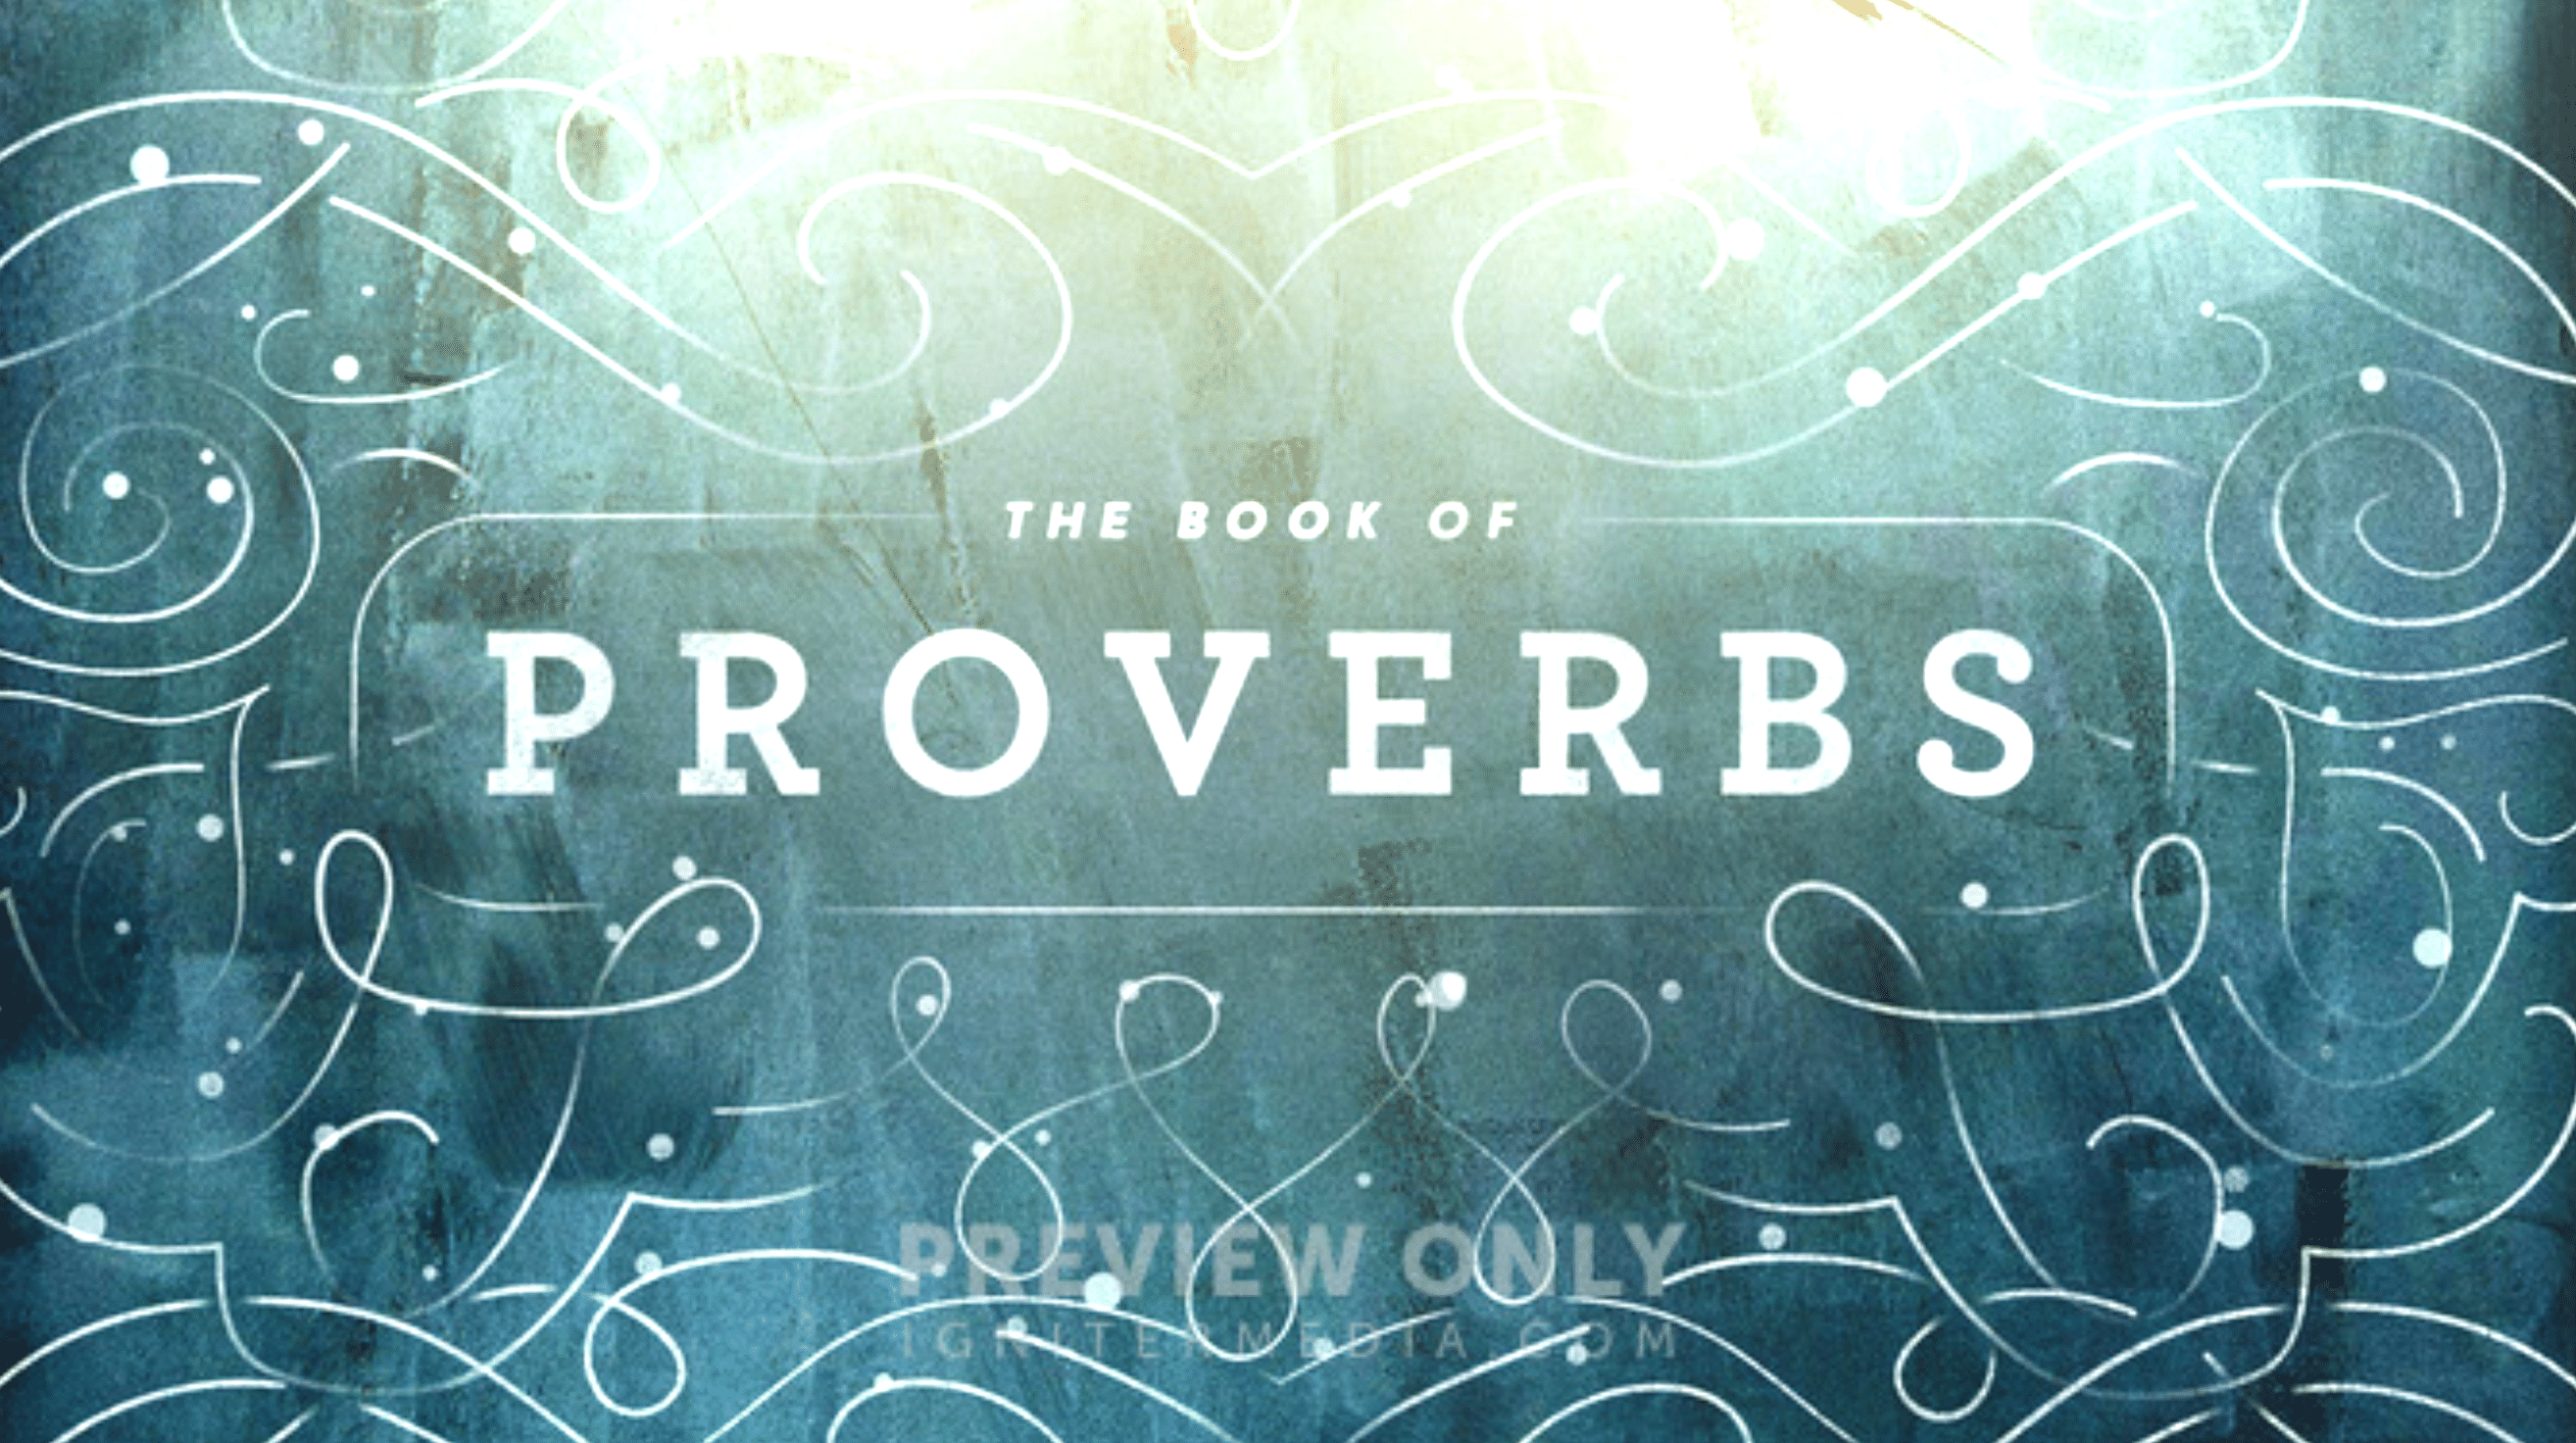 Proverbs 18 & 27, Wisdom & Friendship (Mill Creek)